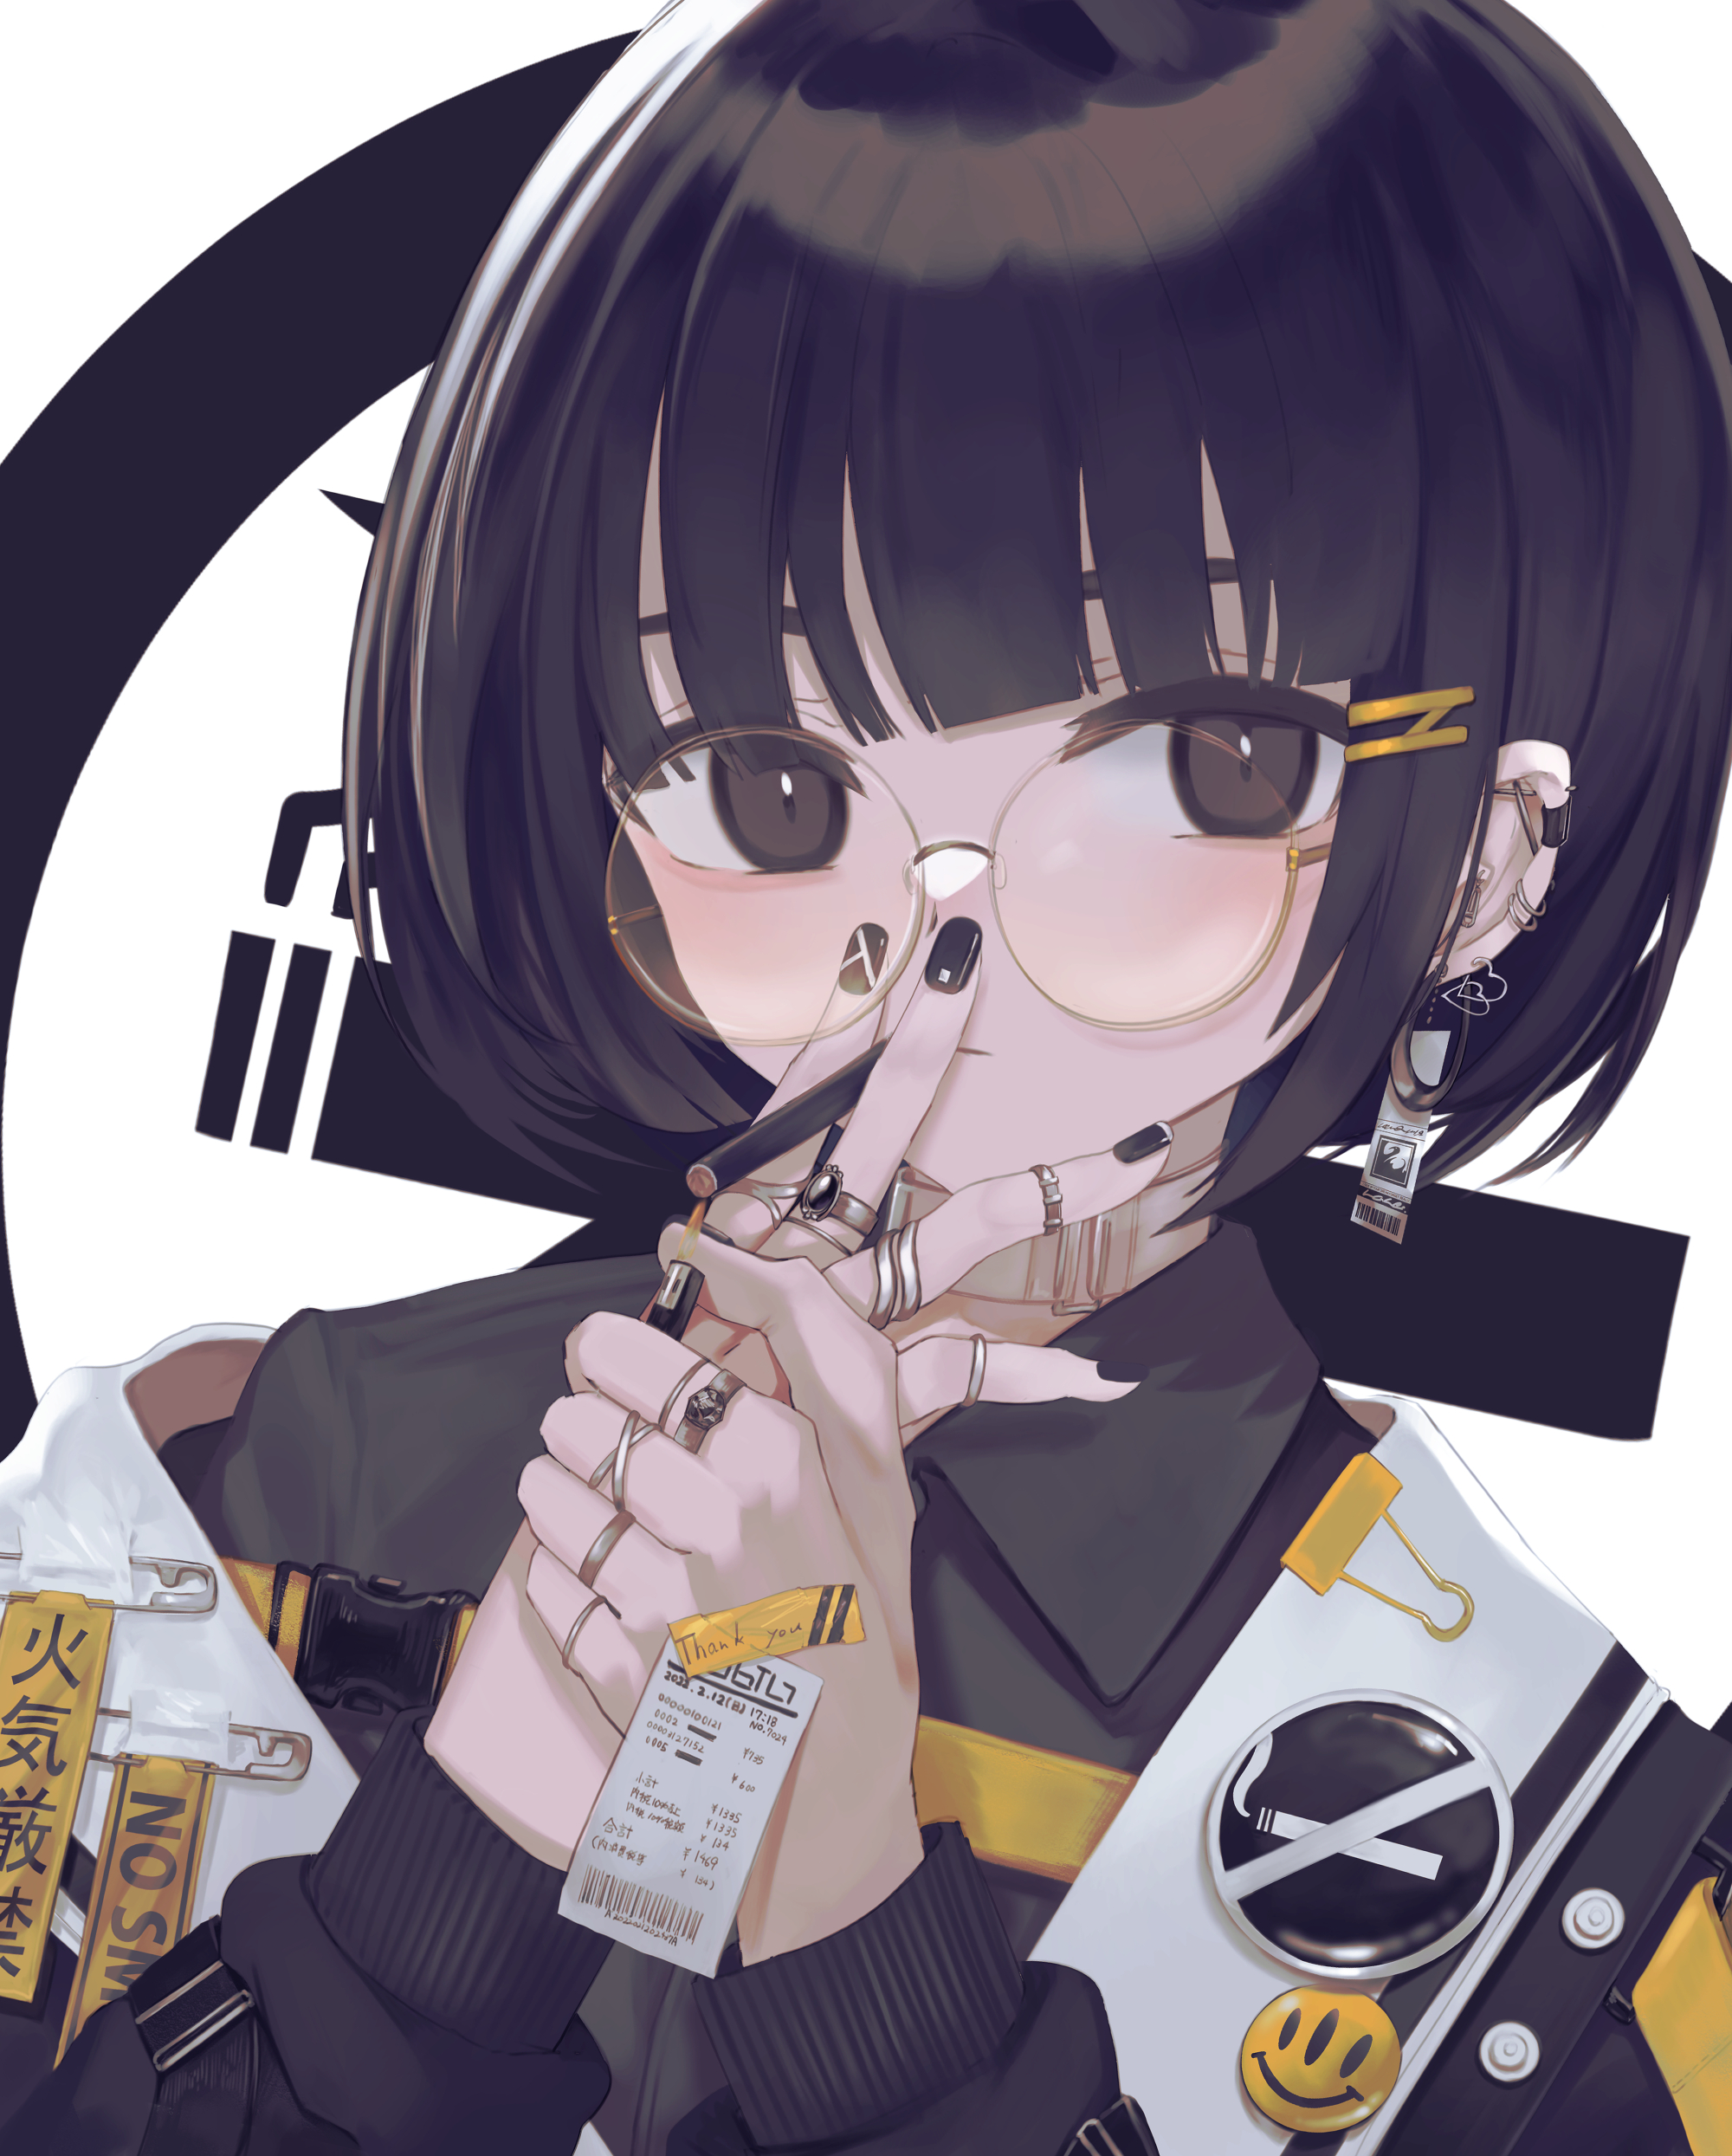 Anime 2000x2489 anime anime girls digital art 2D smoking glasses rings short hair artwork Ogami Ren